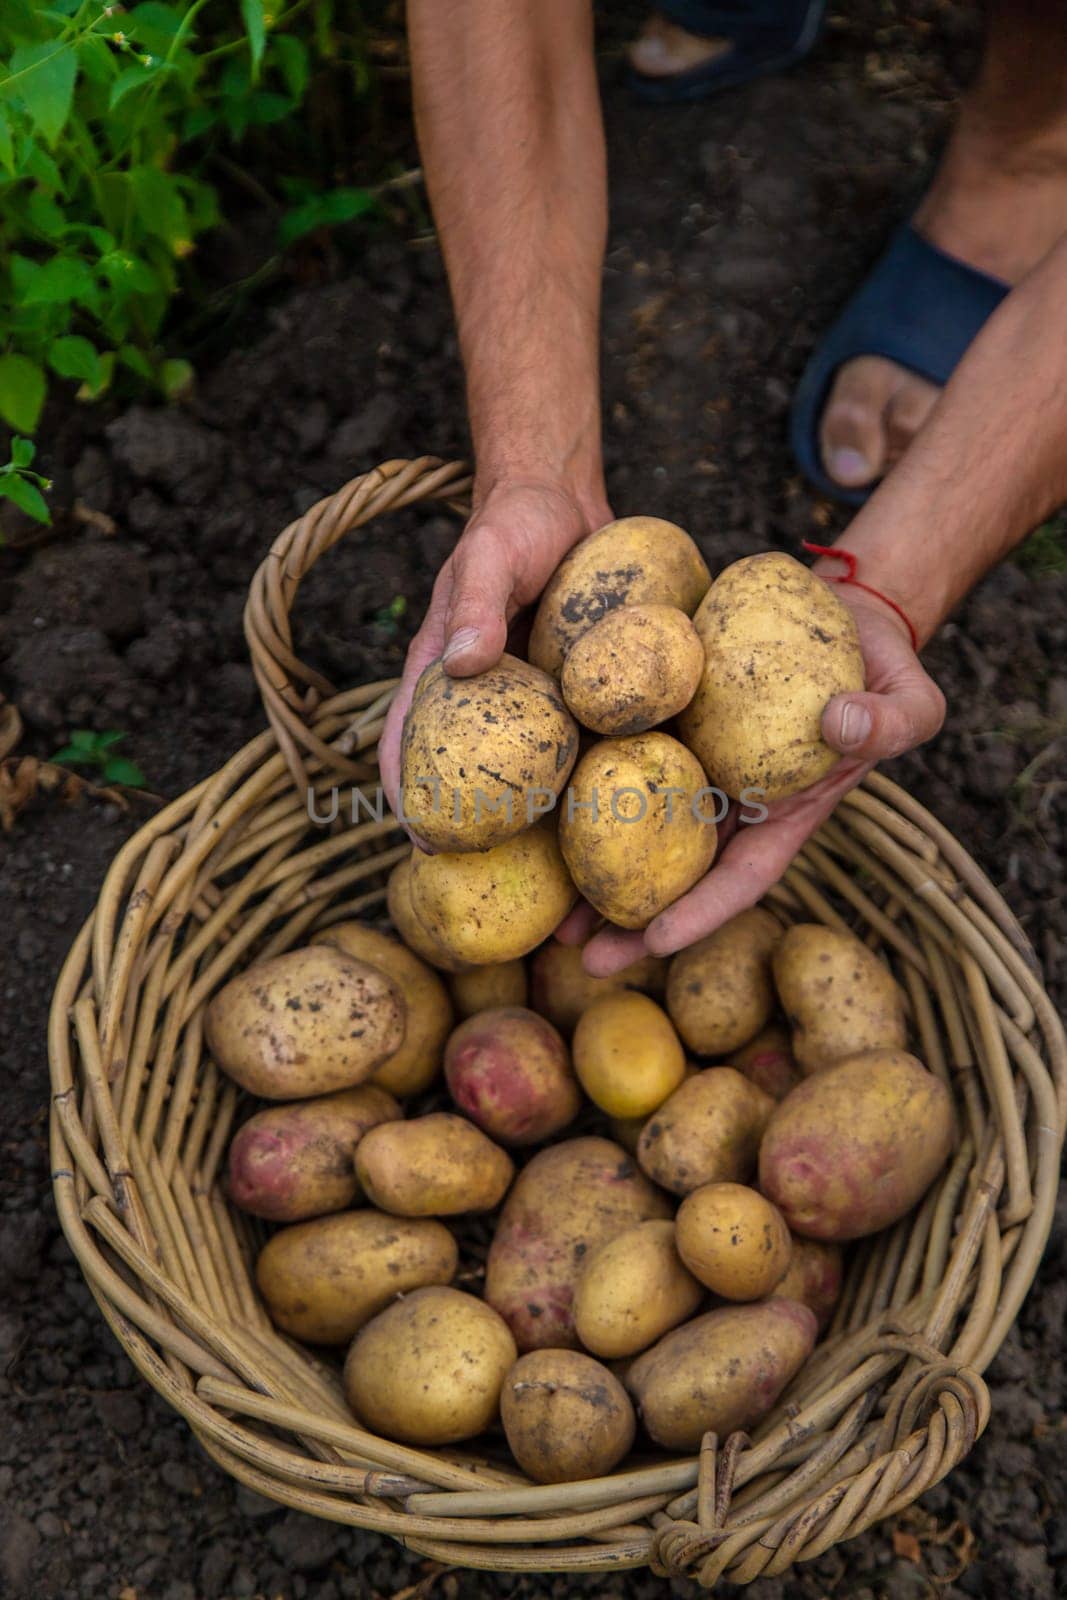 Potato harvest in the garden in hands. selective focus. by yanadjana